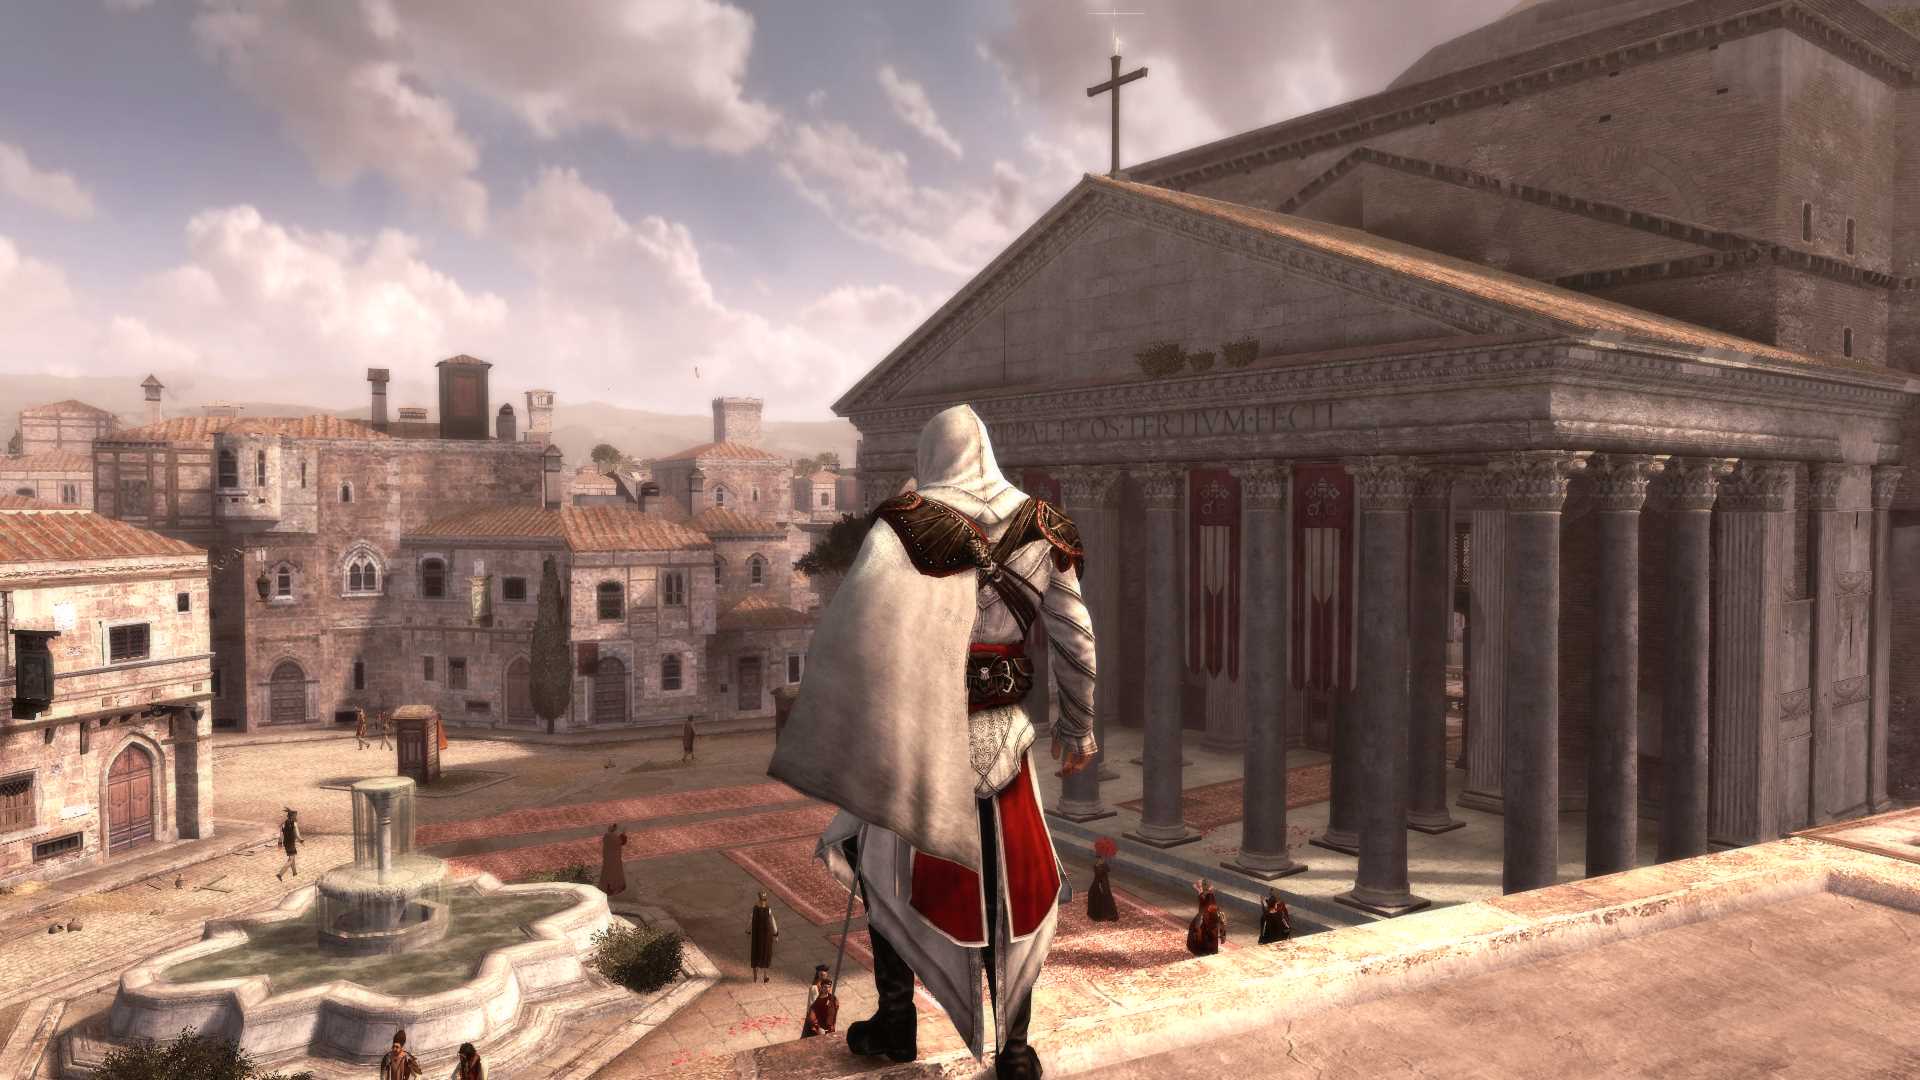 Скриншот-2 из игры Assassin's Creed The Ezio Collection для ХВОХ